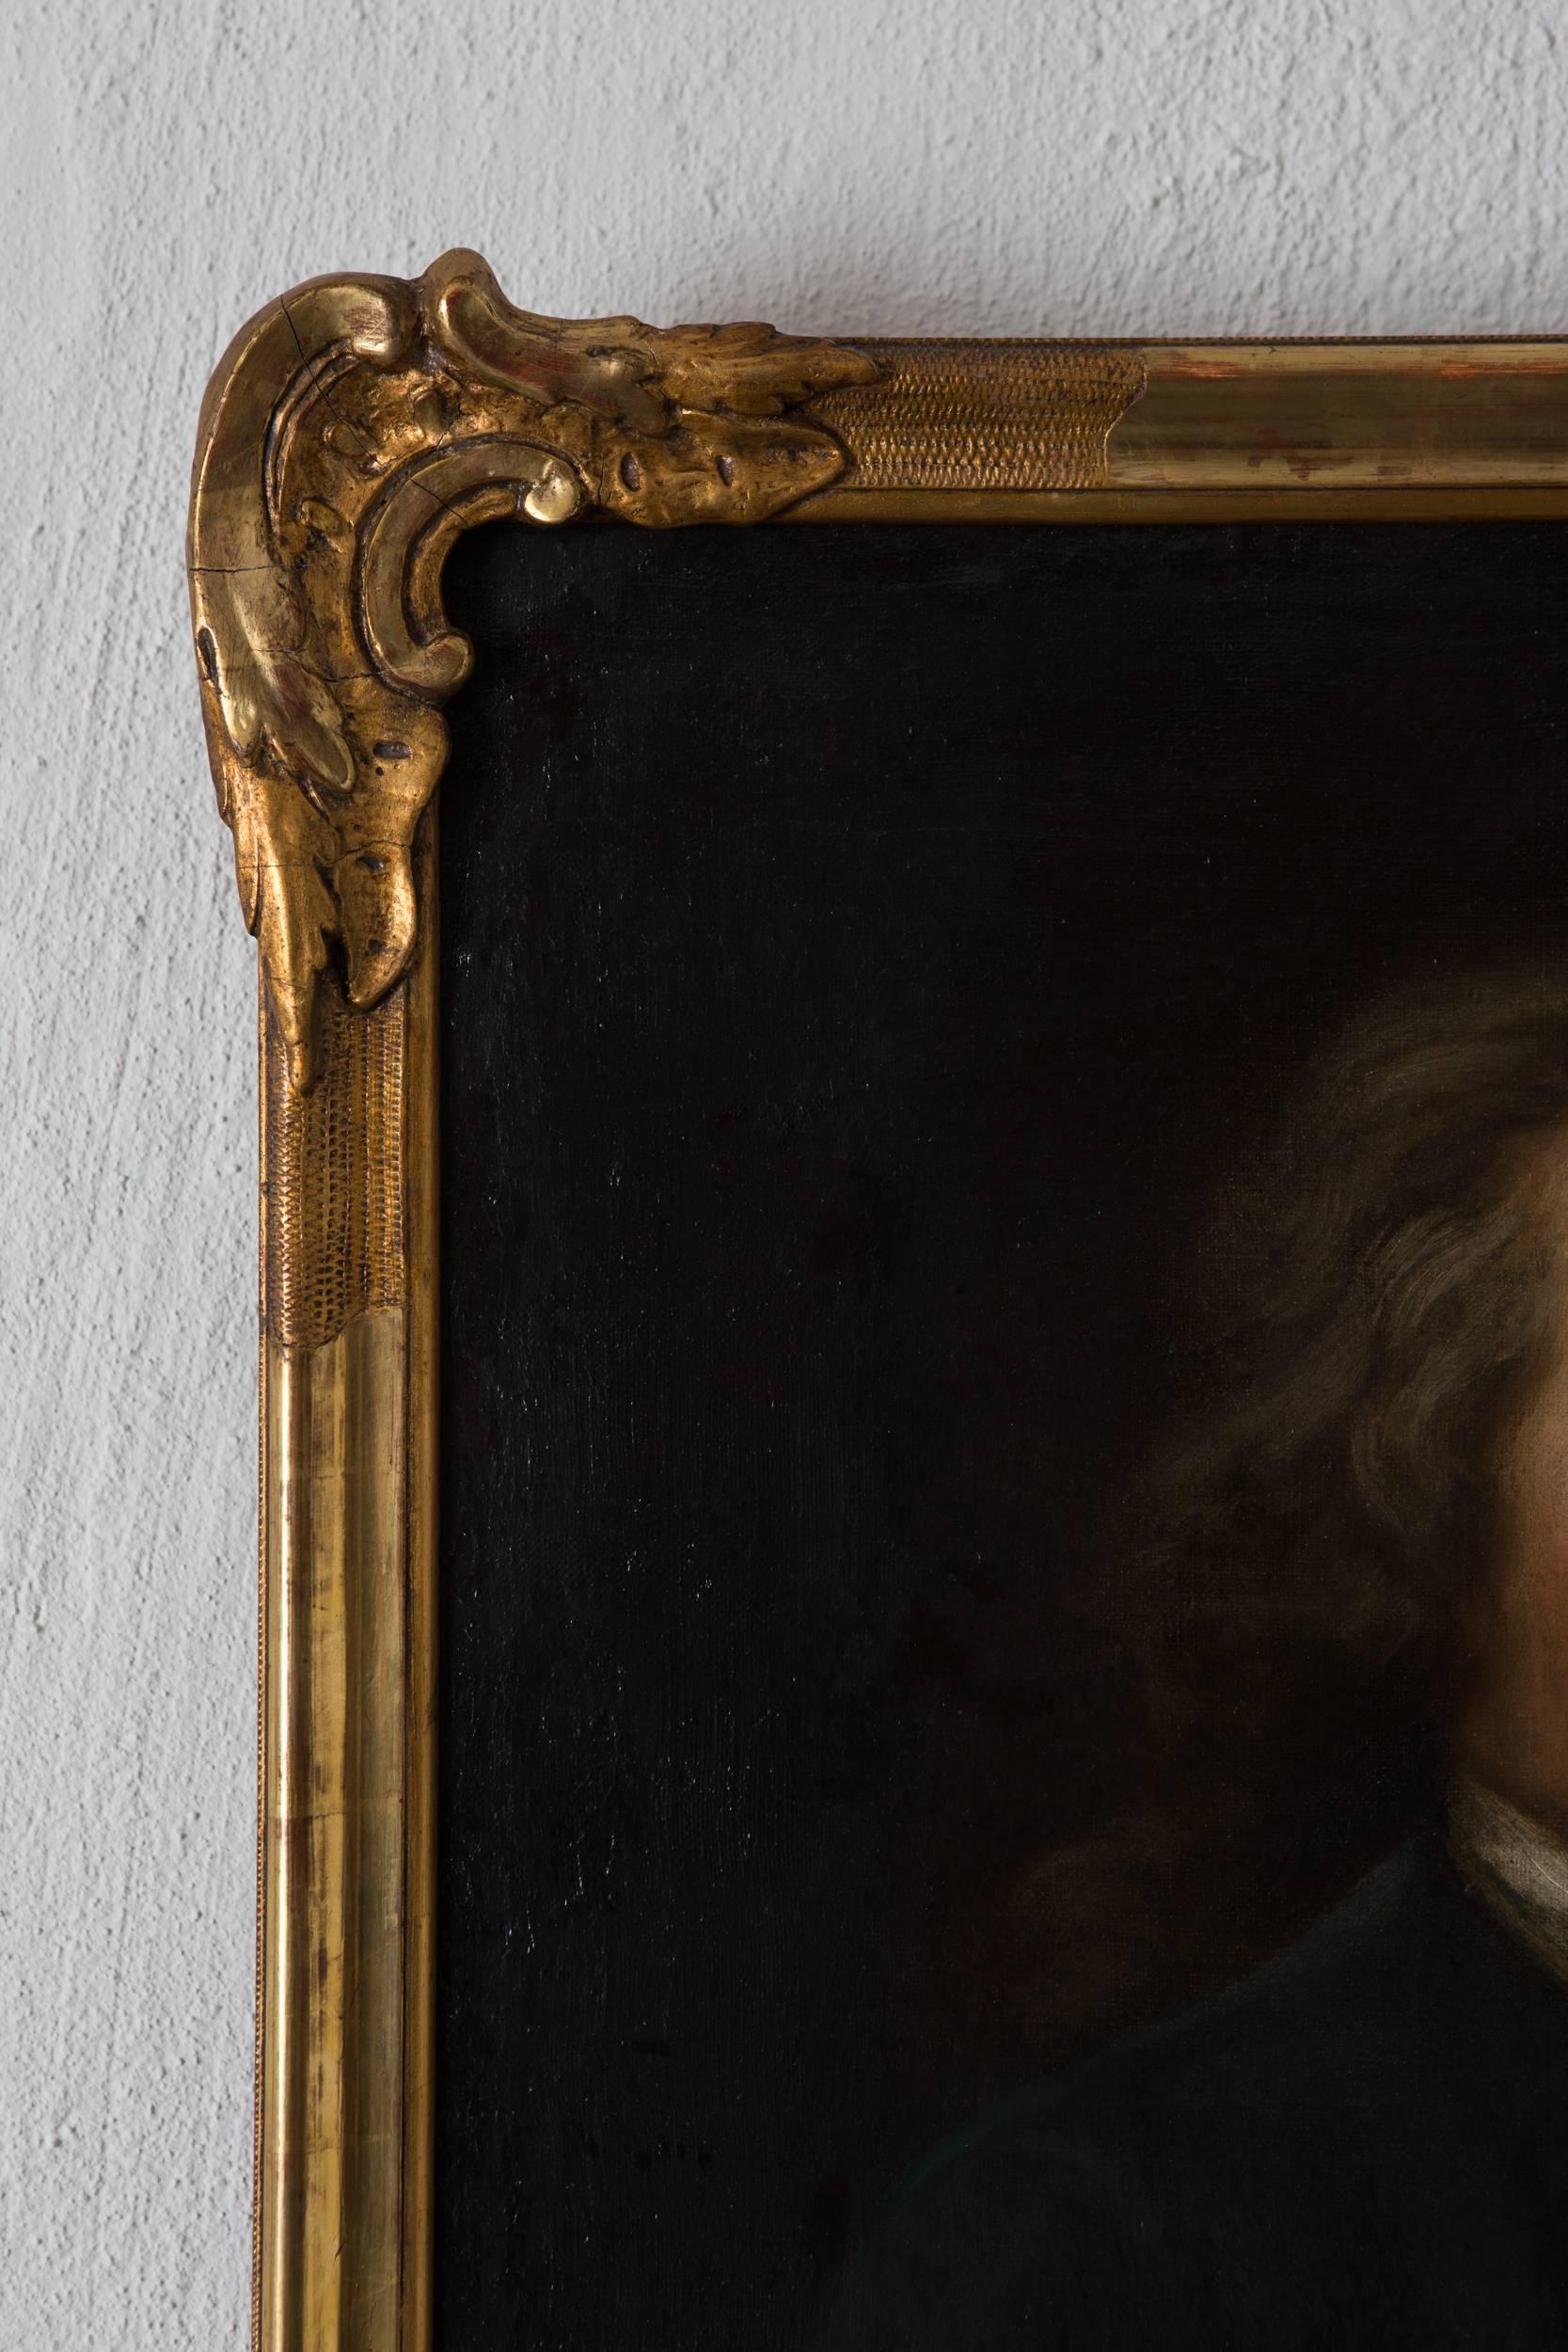 Portrait de Robert Gardelle Peinture à l'huile suisse, 18e siècle, Suisse. Portrait peint par Robert Gardelle. Signé a tergo / au dos R. Gardelle.

Robert Gardelle est né dans une famille de la bourgeoisie genevoise, il est le deuxième de quatre